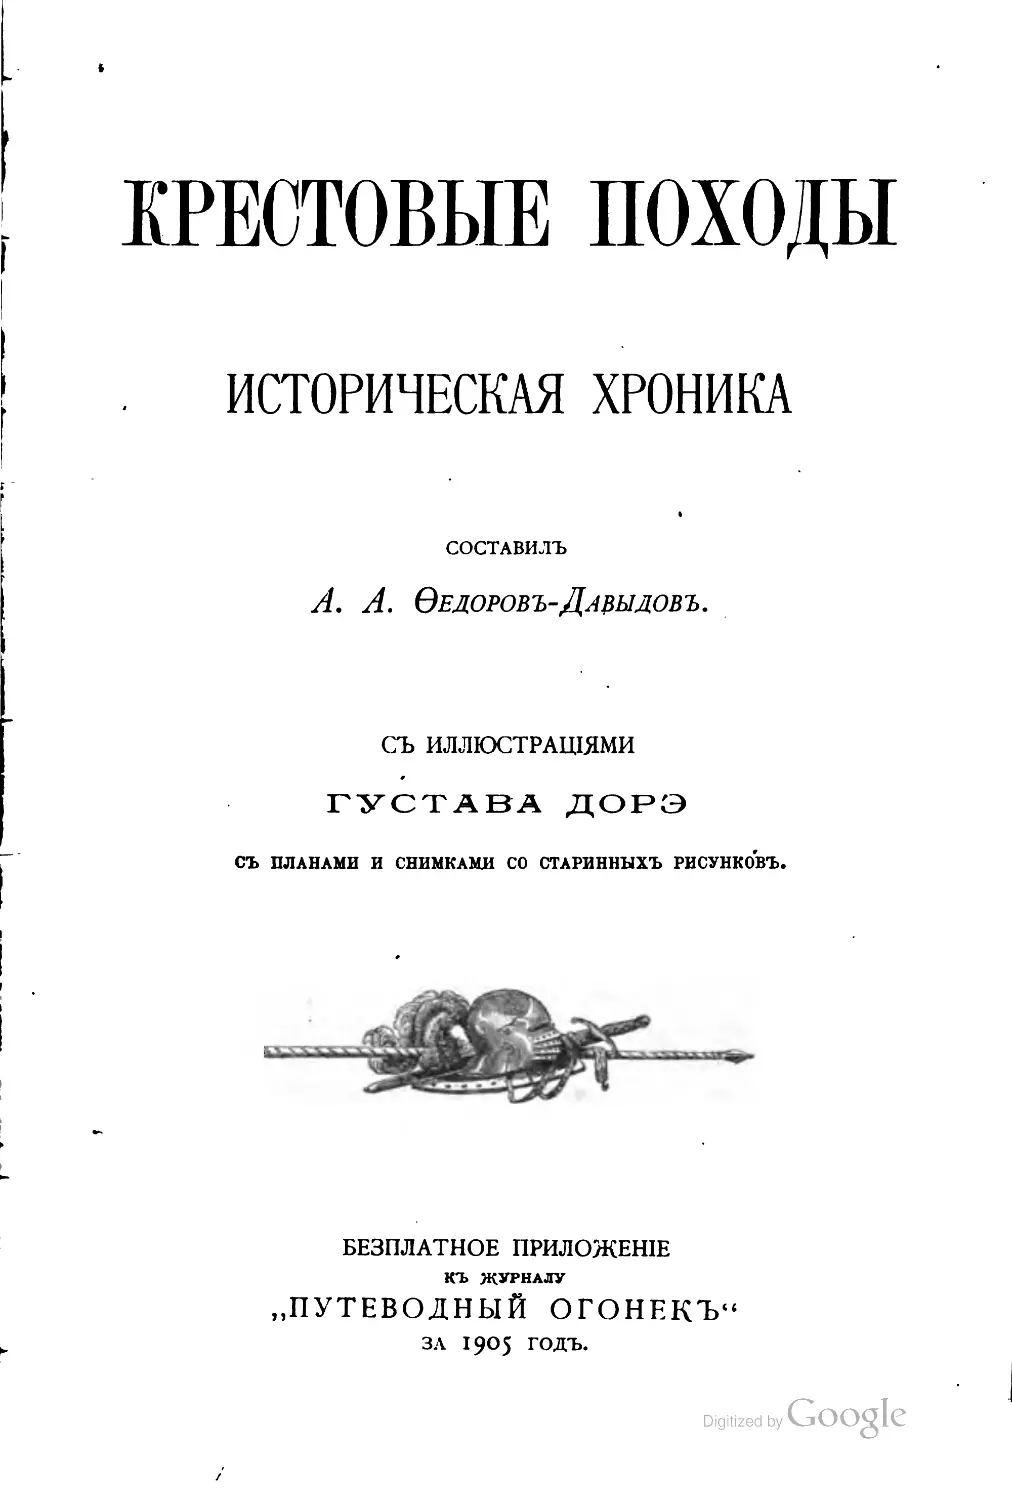 Fedorov_Davydov_A_A_Krestovye_pohody_Istoricheskaya_hronika_1905